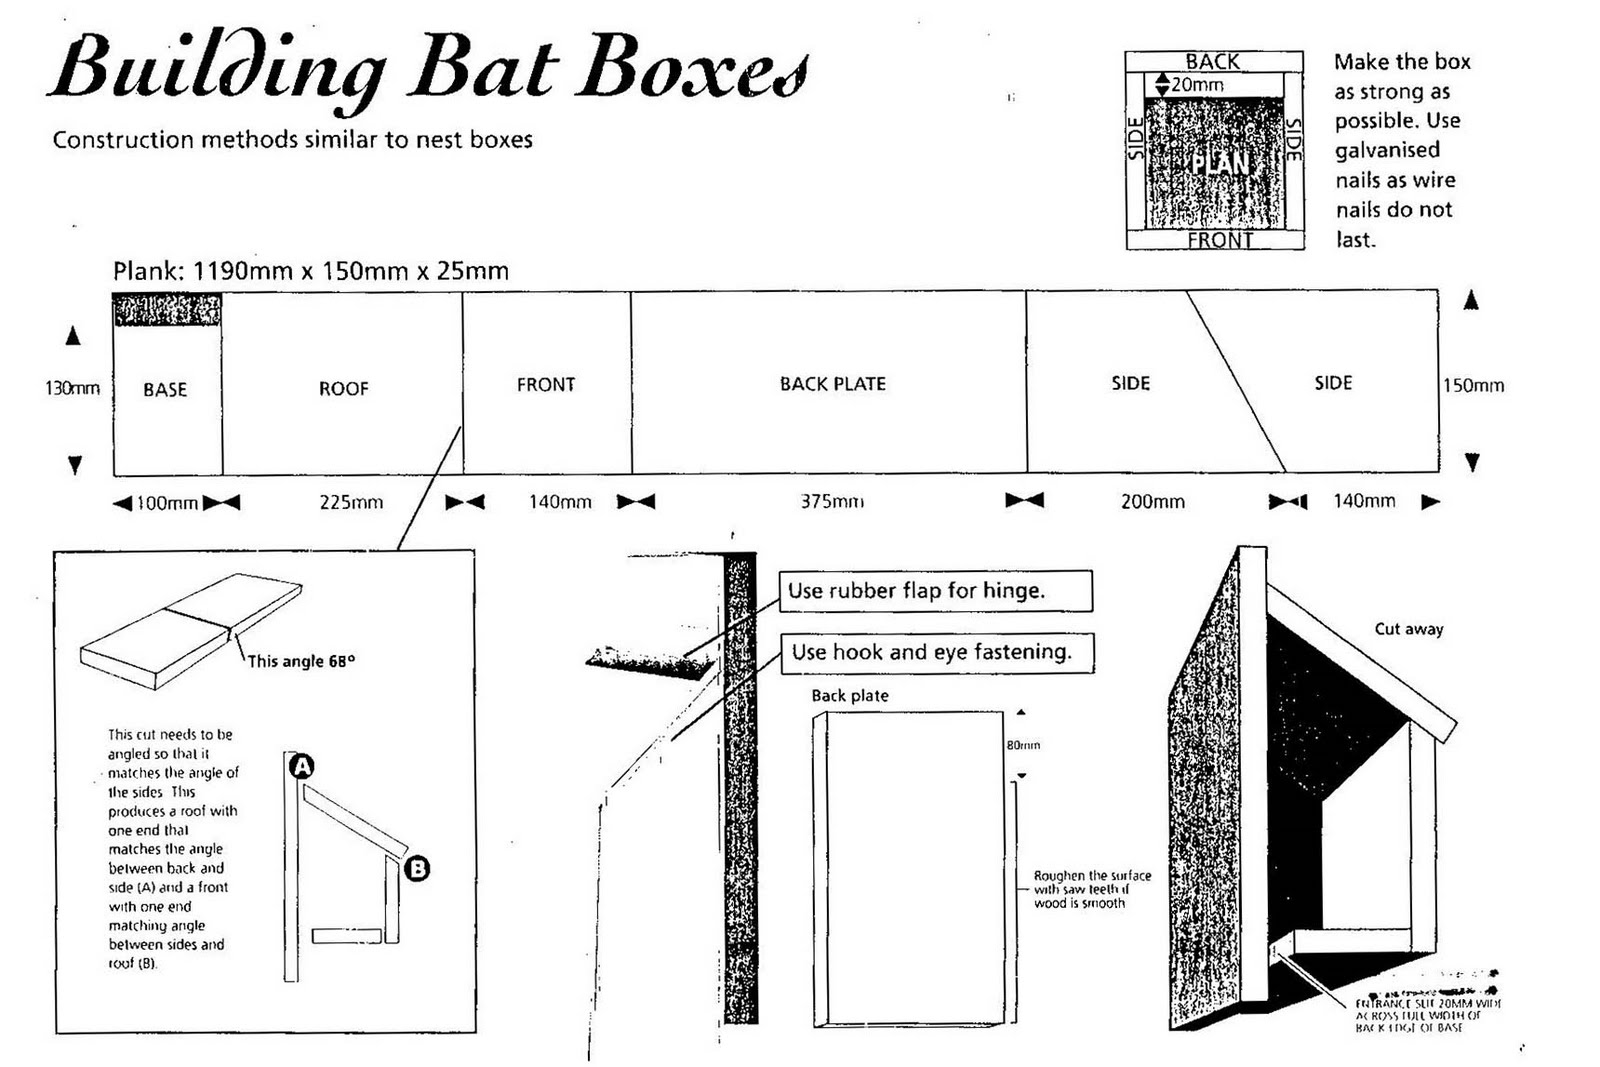 How do you build a bat box?